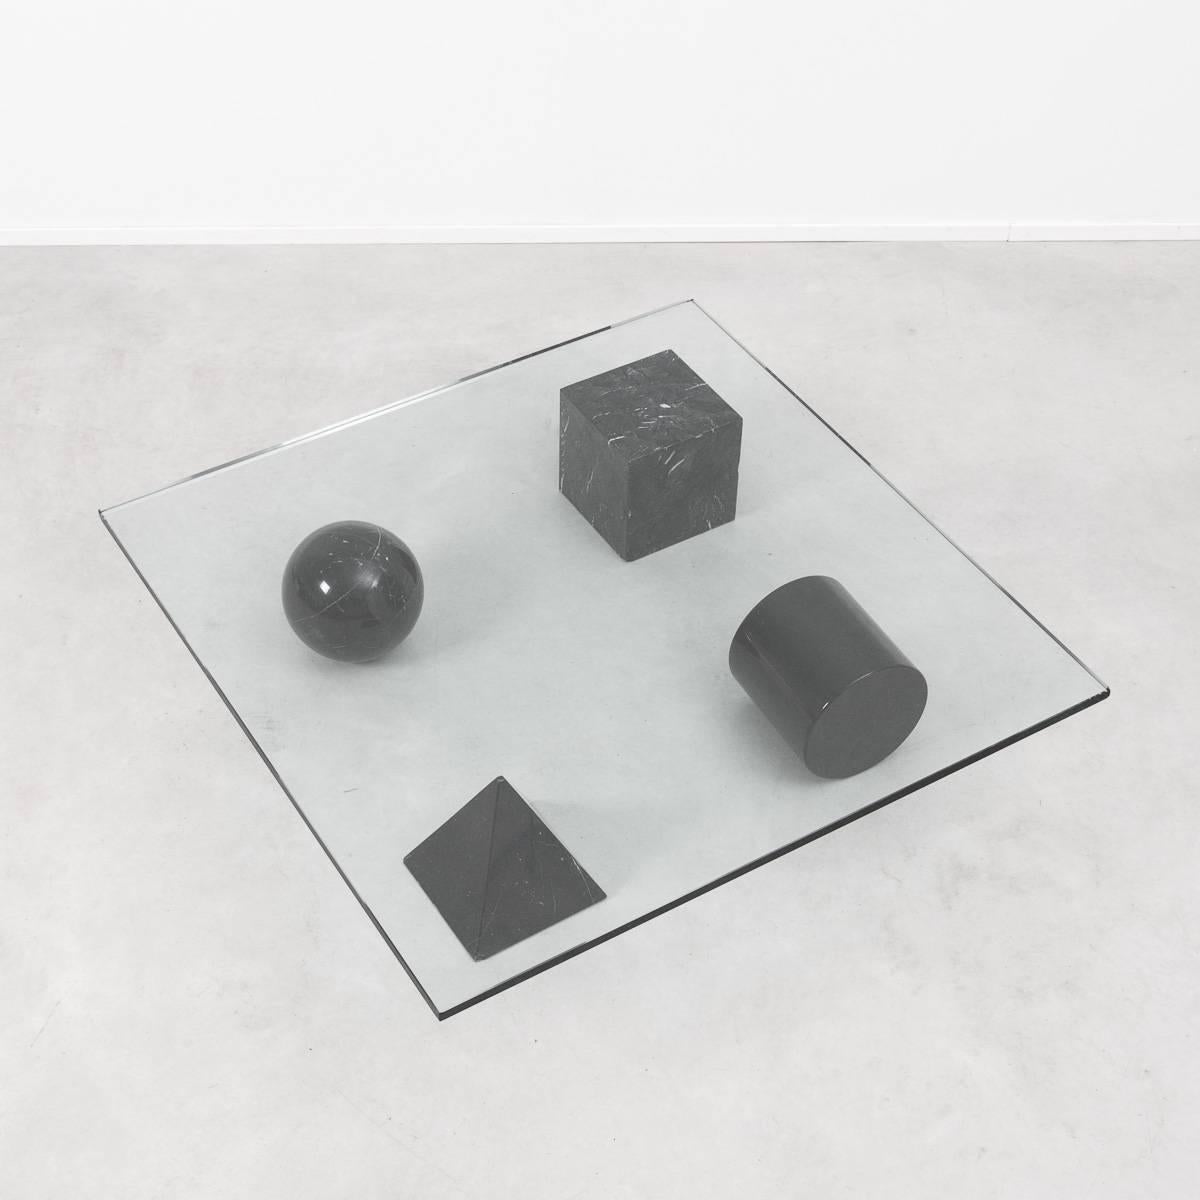 Mid-Century Modern Massimo Vignelli Metafora Coffee Table